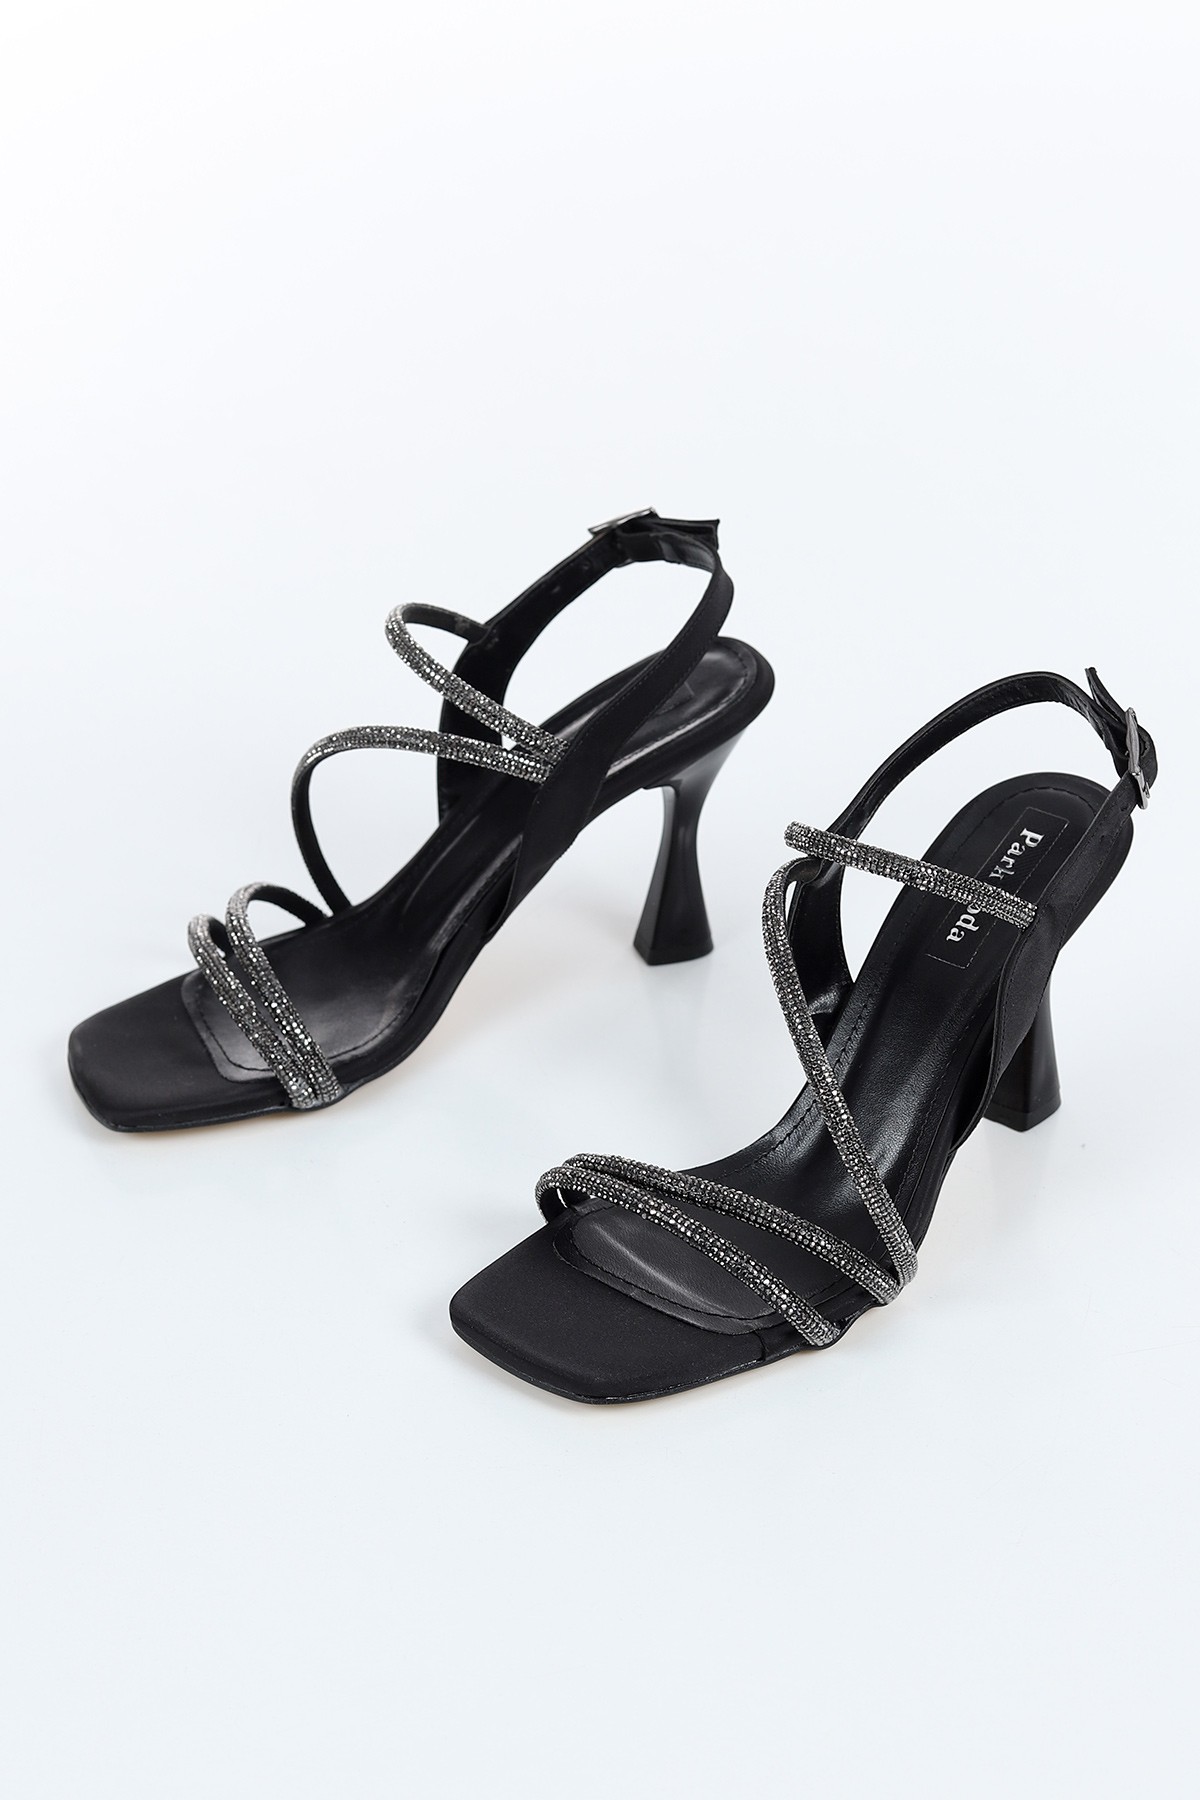 Siyah Saten Taş Bantlı Detay Bilek Kemerli Topuklu Ayakkabı 161527